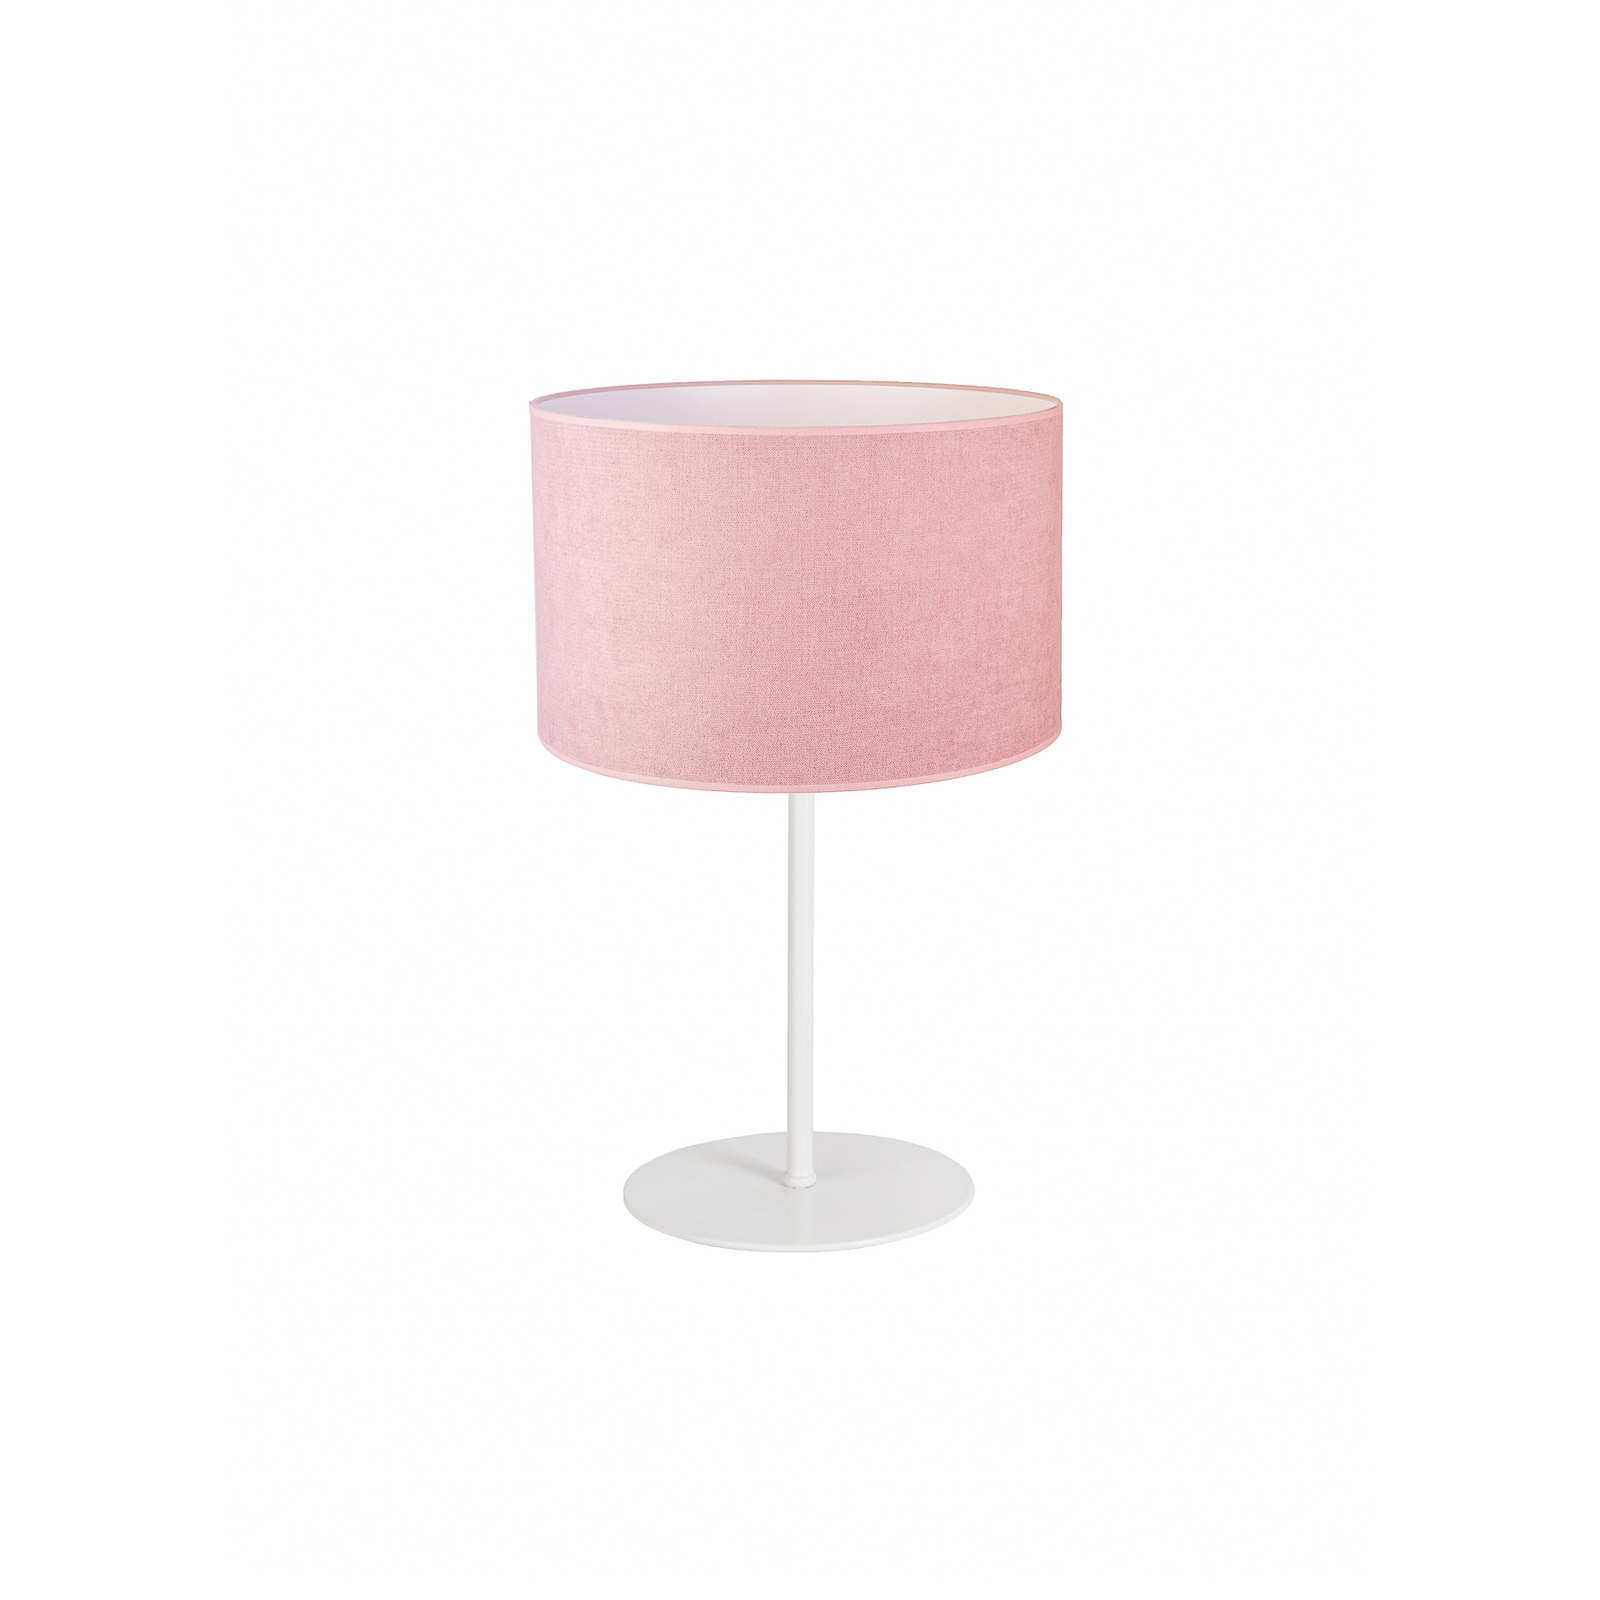 Bordlampe Pastell Roller høyde 30 cm rosa